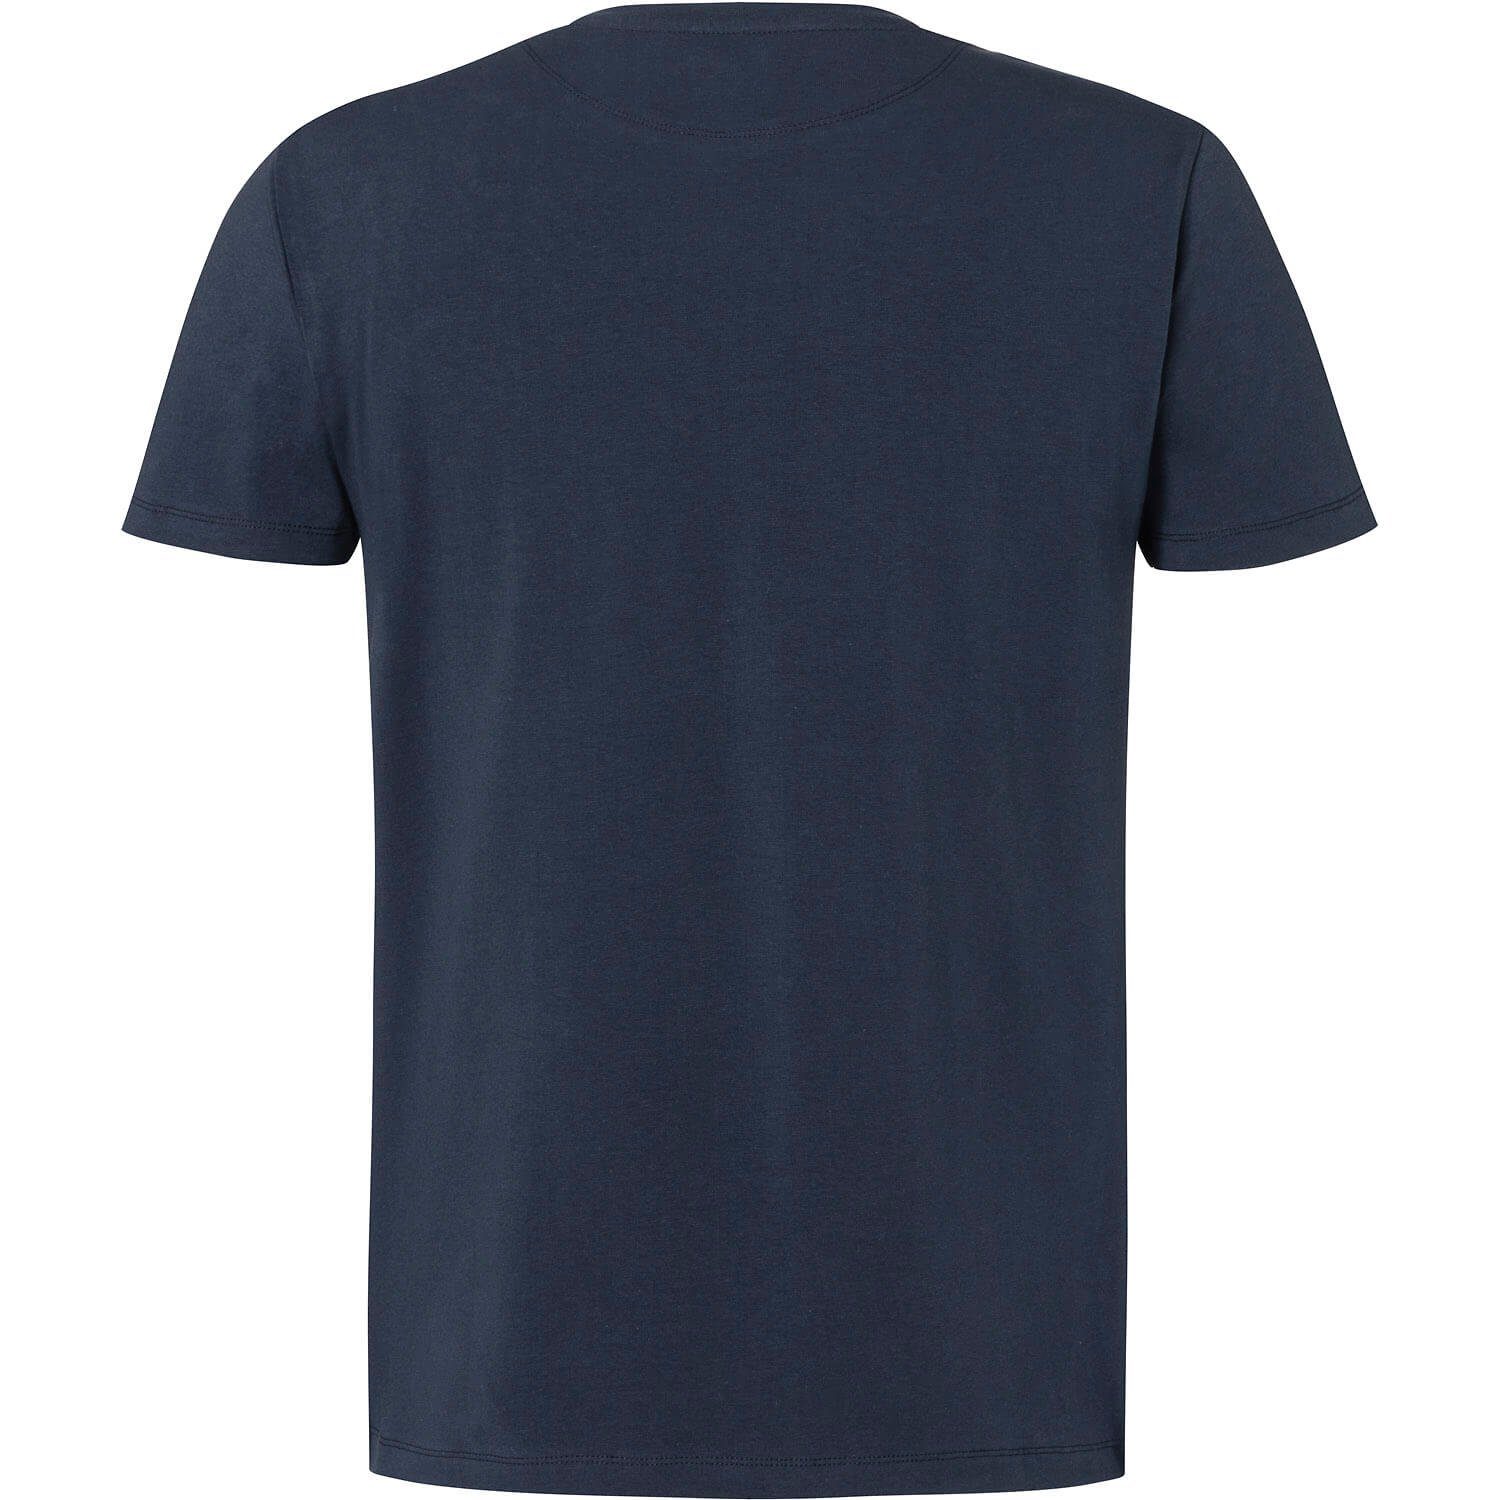 T-Shirt K20 Marine Trachtenshirt Bavaria Wiesnkönig